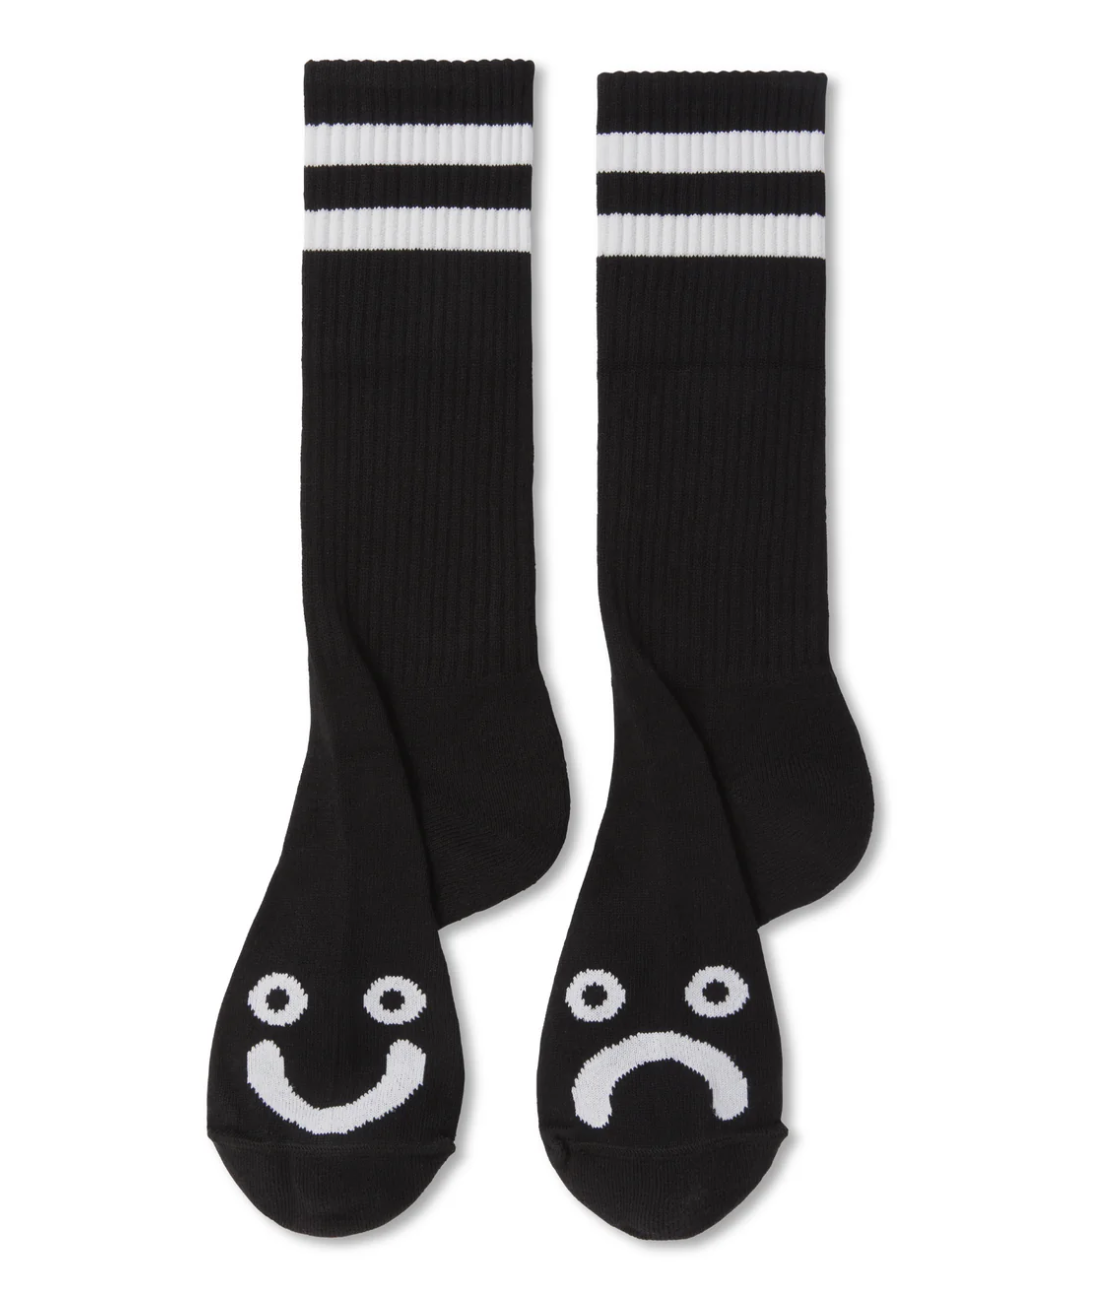 Polar Skate Co. - Long Happy Sad Socks - Black